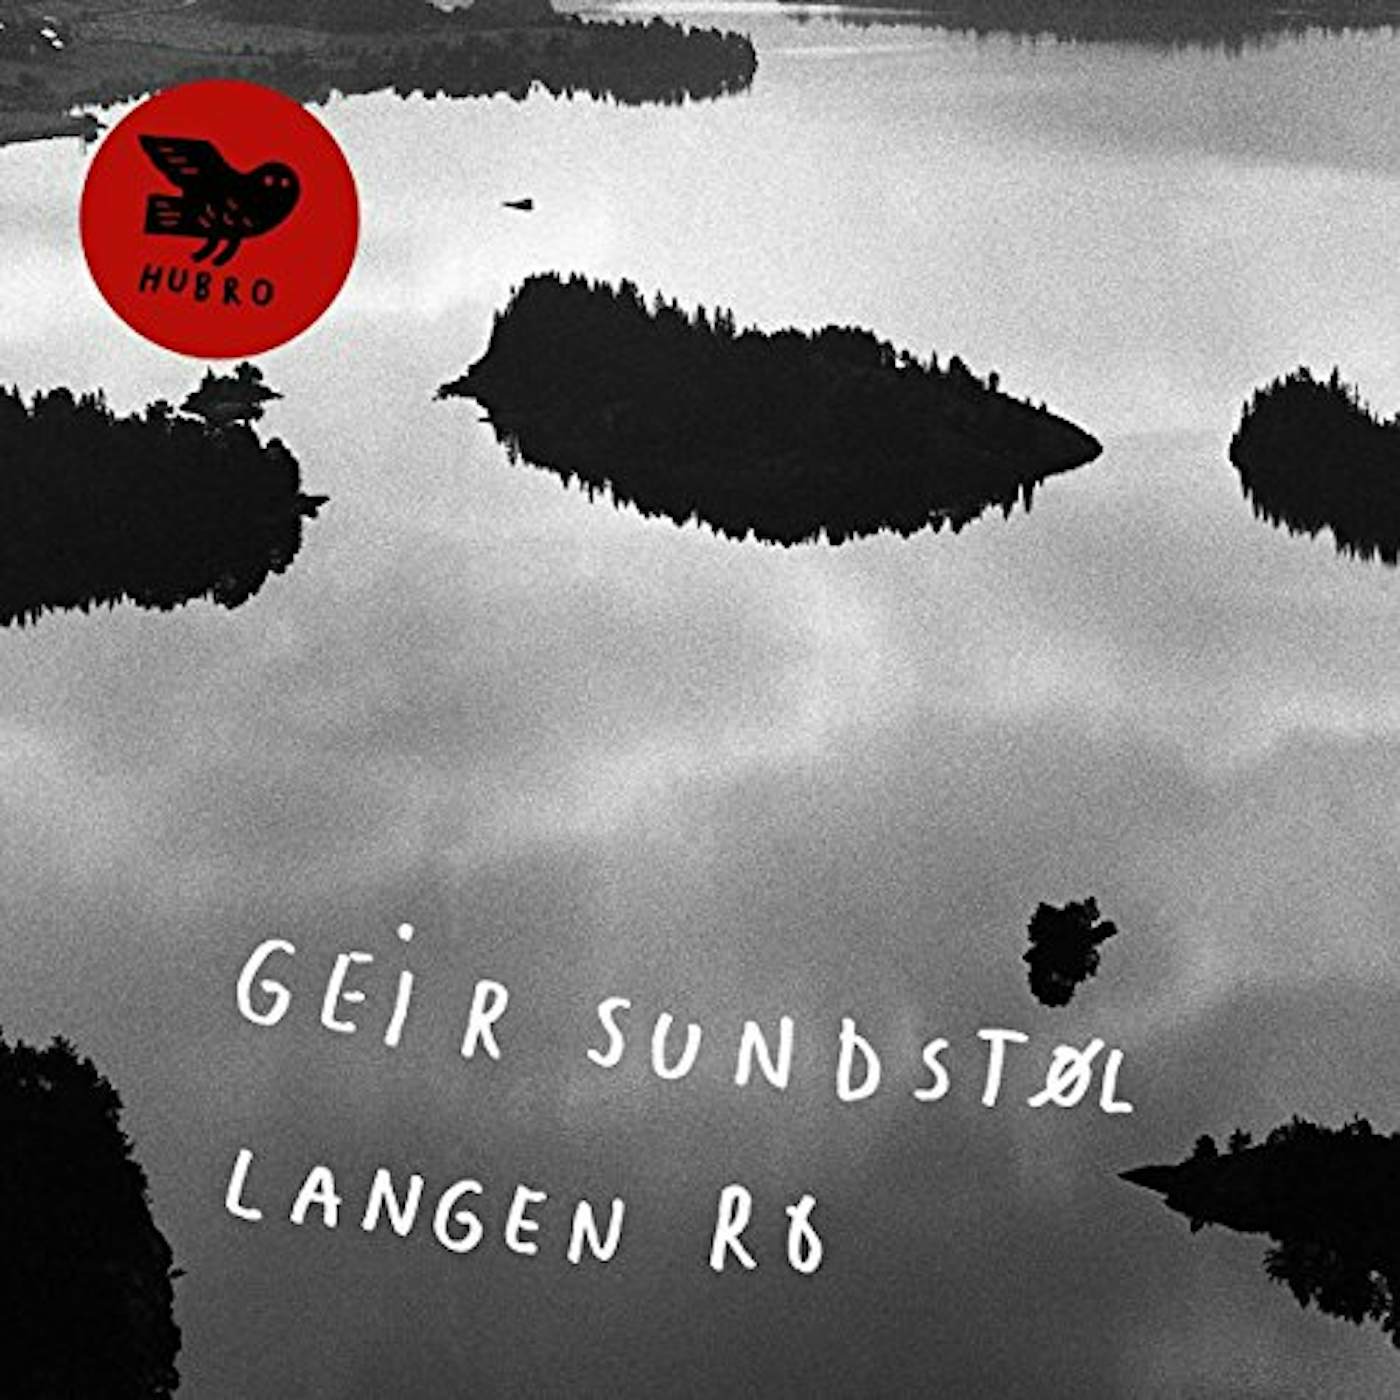 Geir Sundstøl LANGEN RO CD